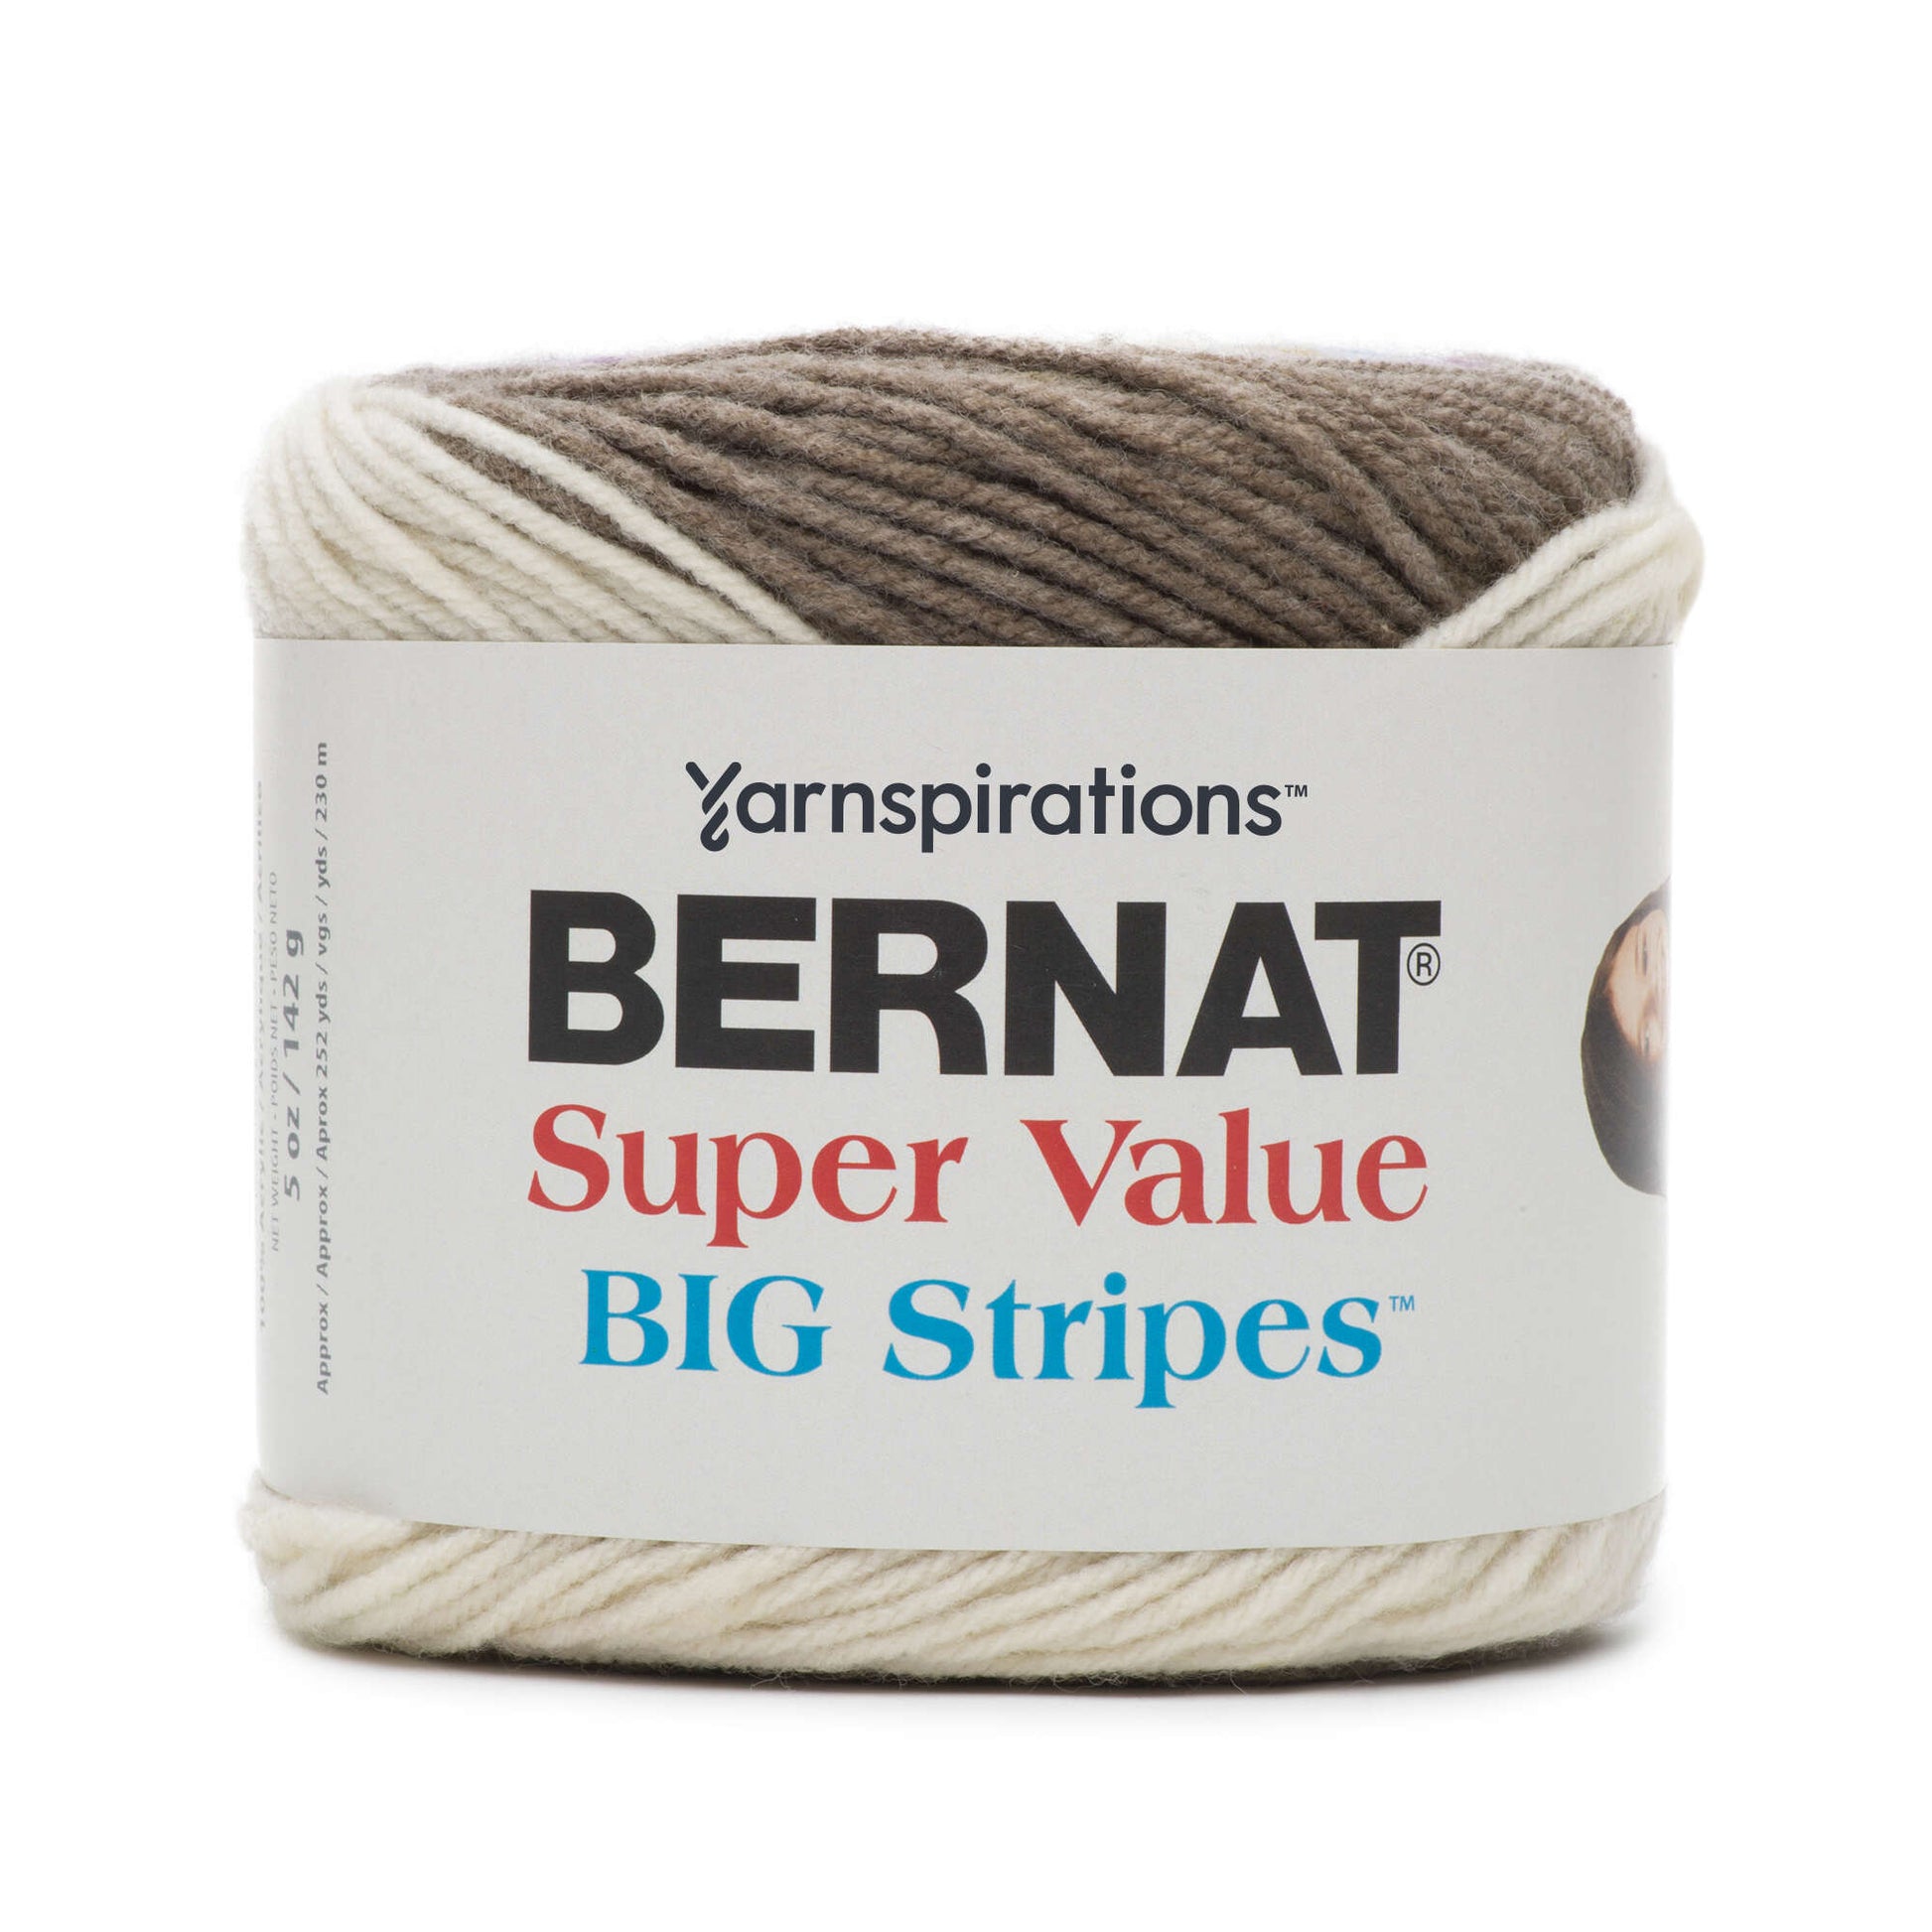 Bernat Super Value Big Stripes Yarn - Discontinued Shades Chambray